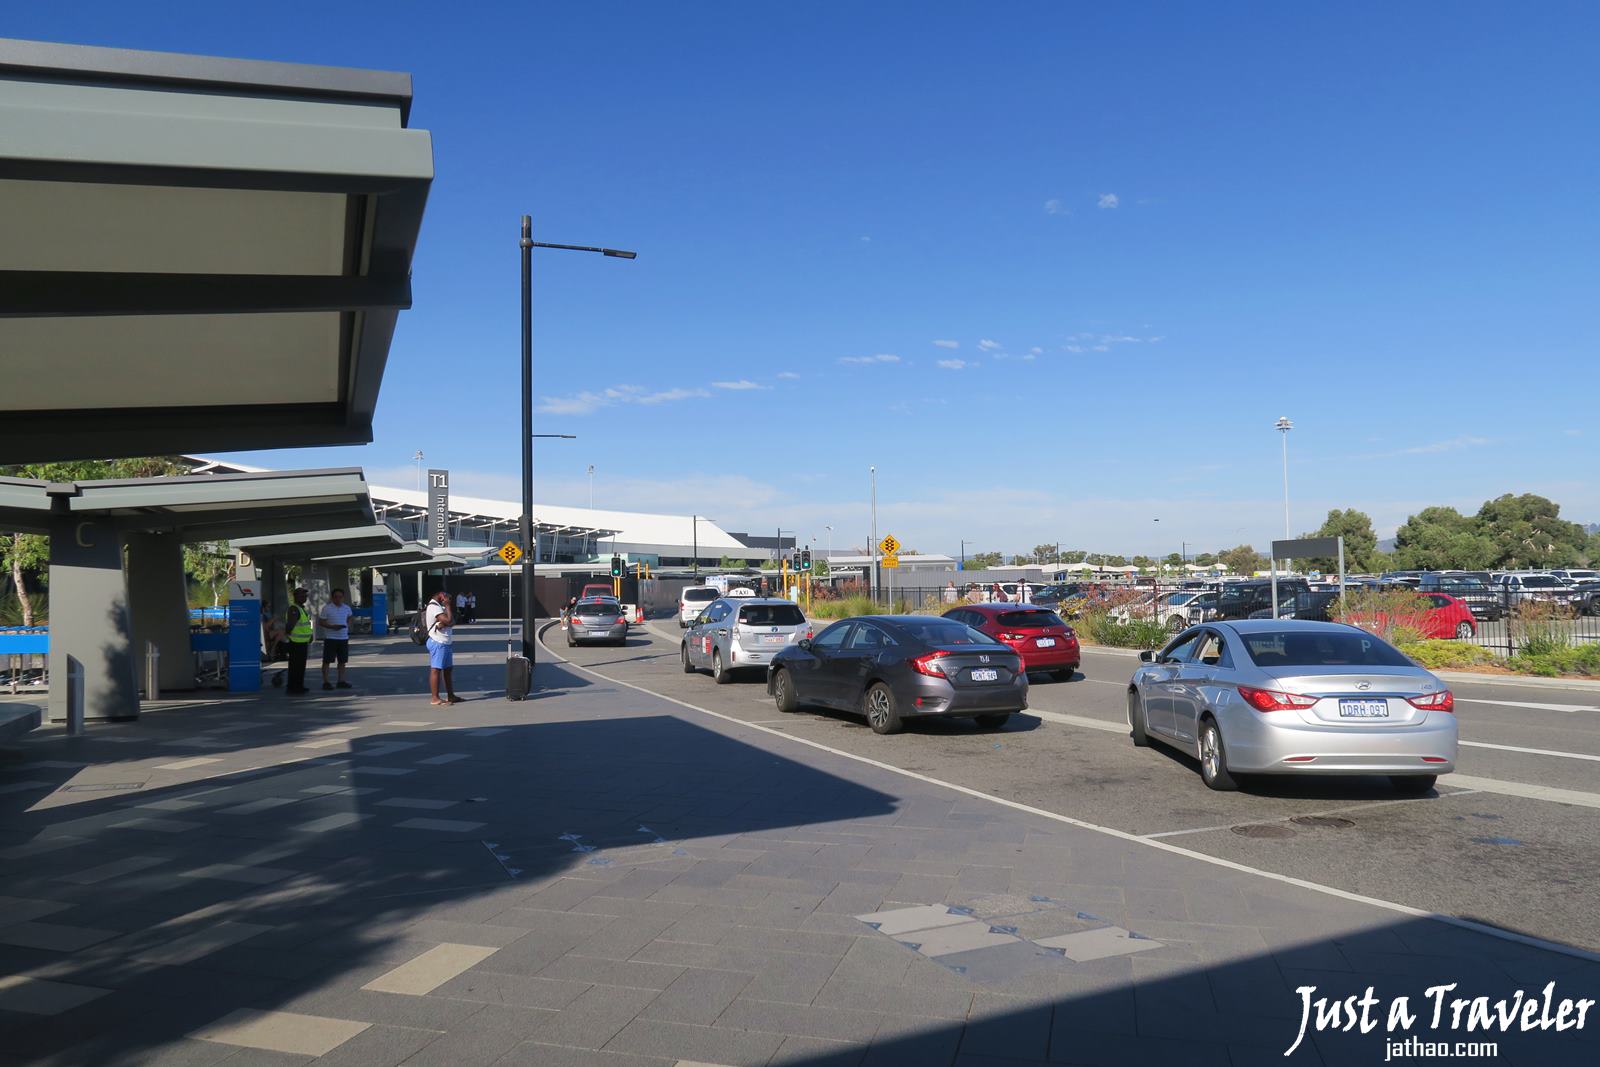 伯斯-交通-巴士-公車-機場-市區-票價-時刻表-搭乘-攻略-費用-便宜-省錢-自由行-旅遊-澳洲-Perth-City-Airport-Transport-Bus